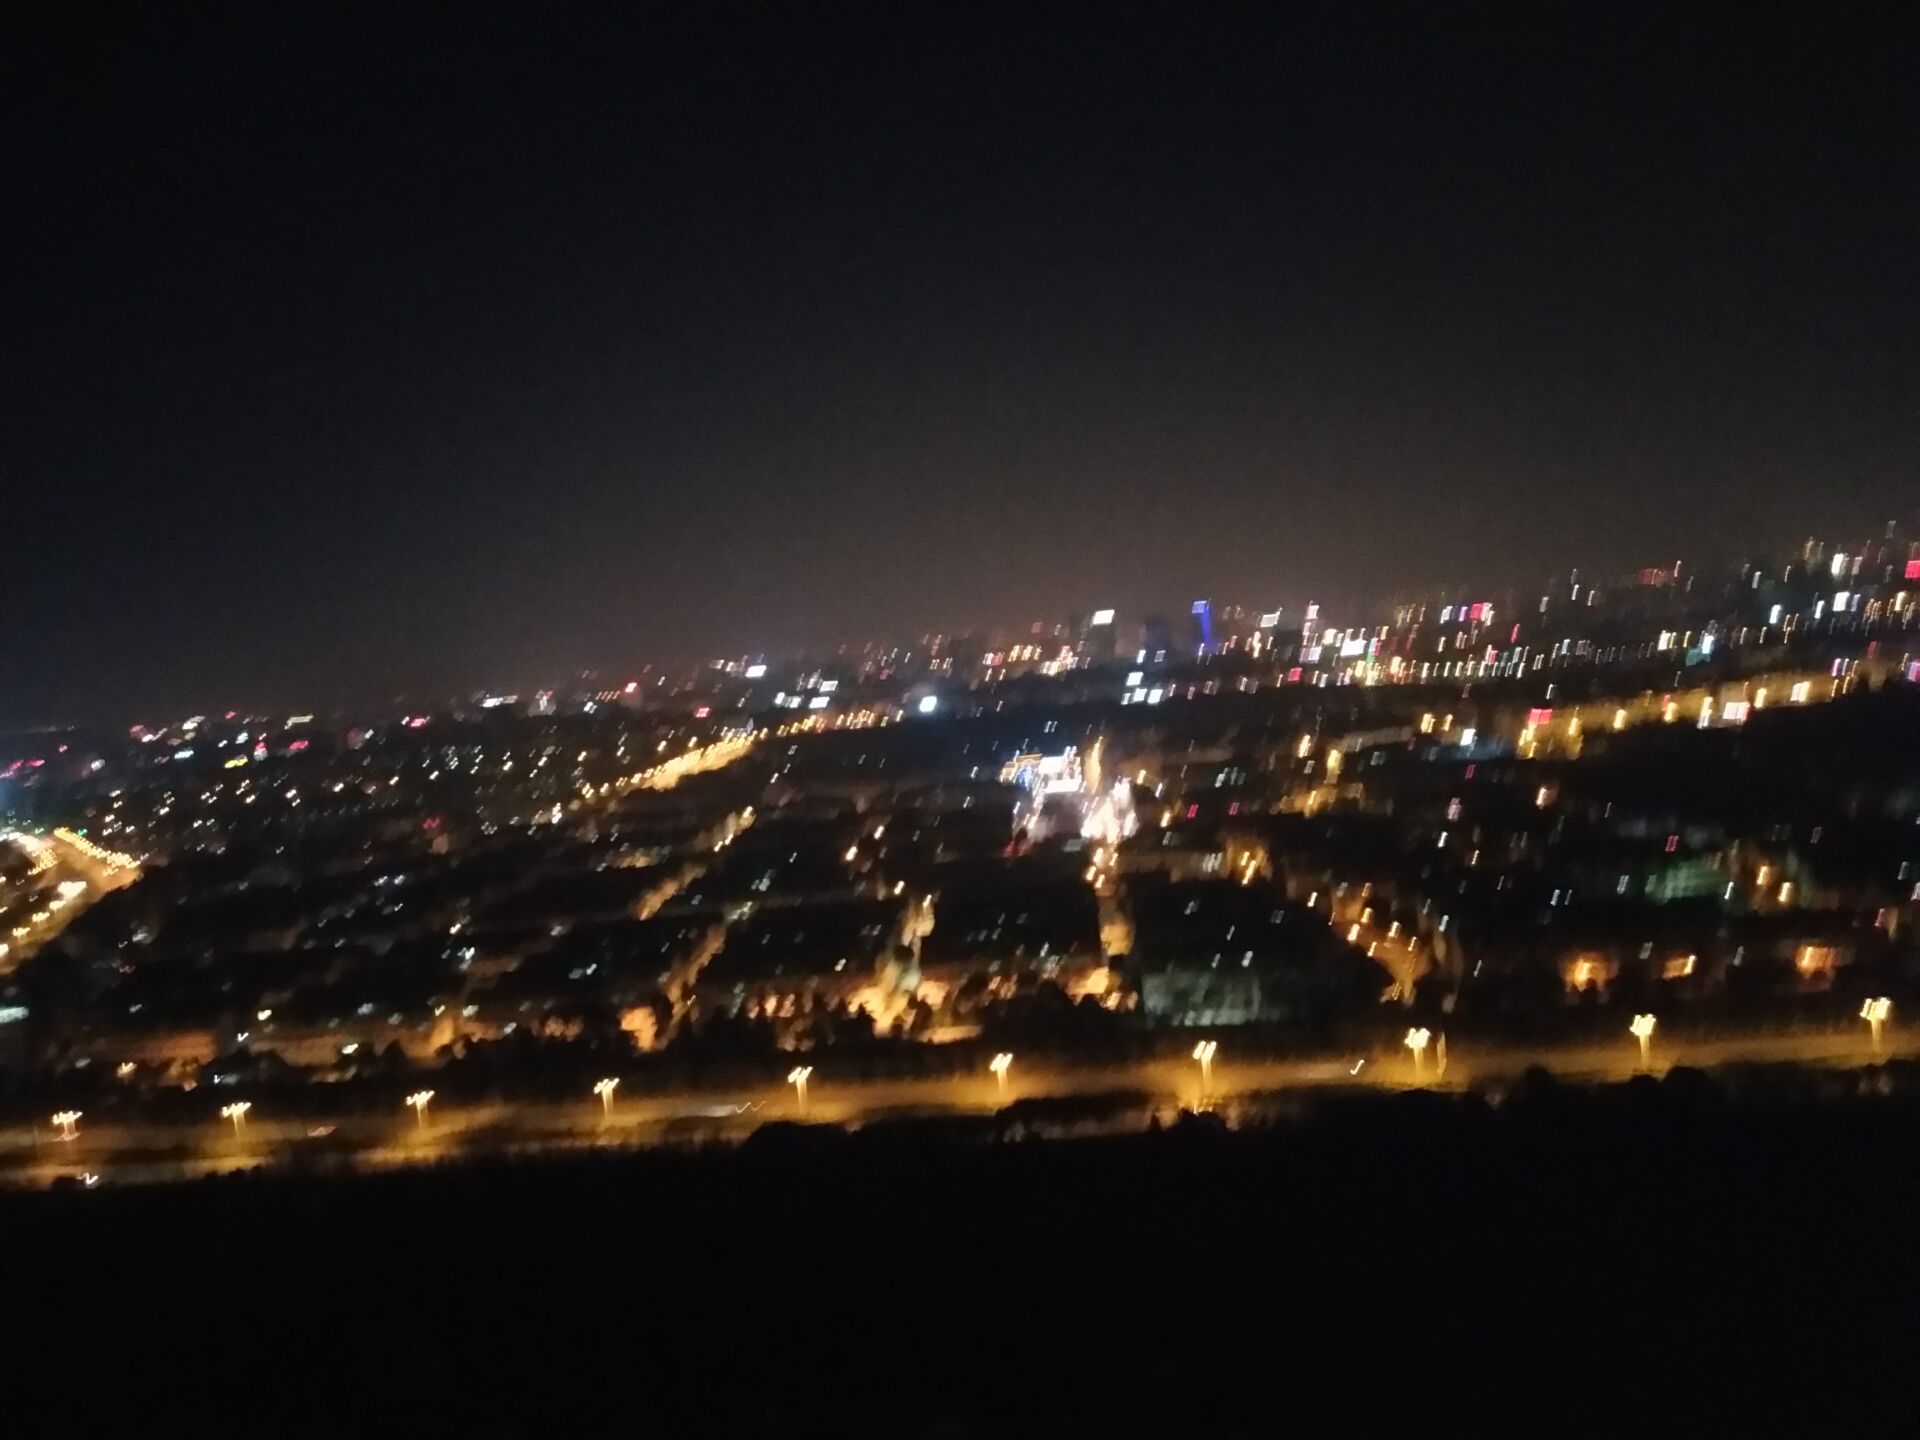 长乐南山公园夜景图片